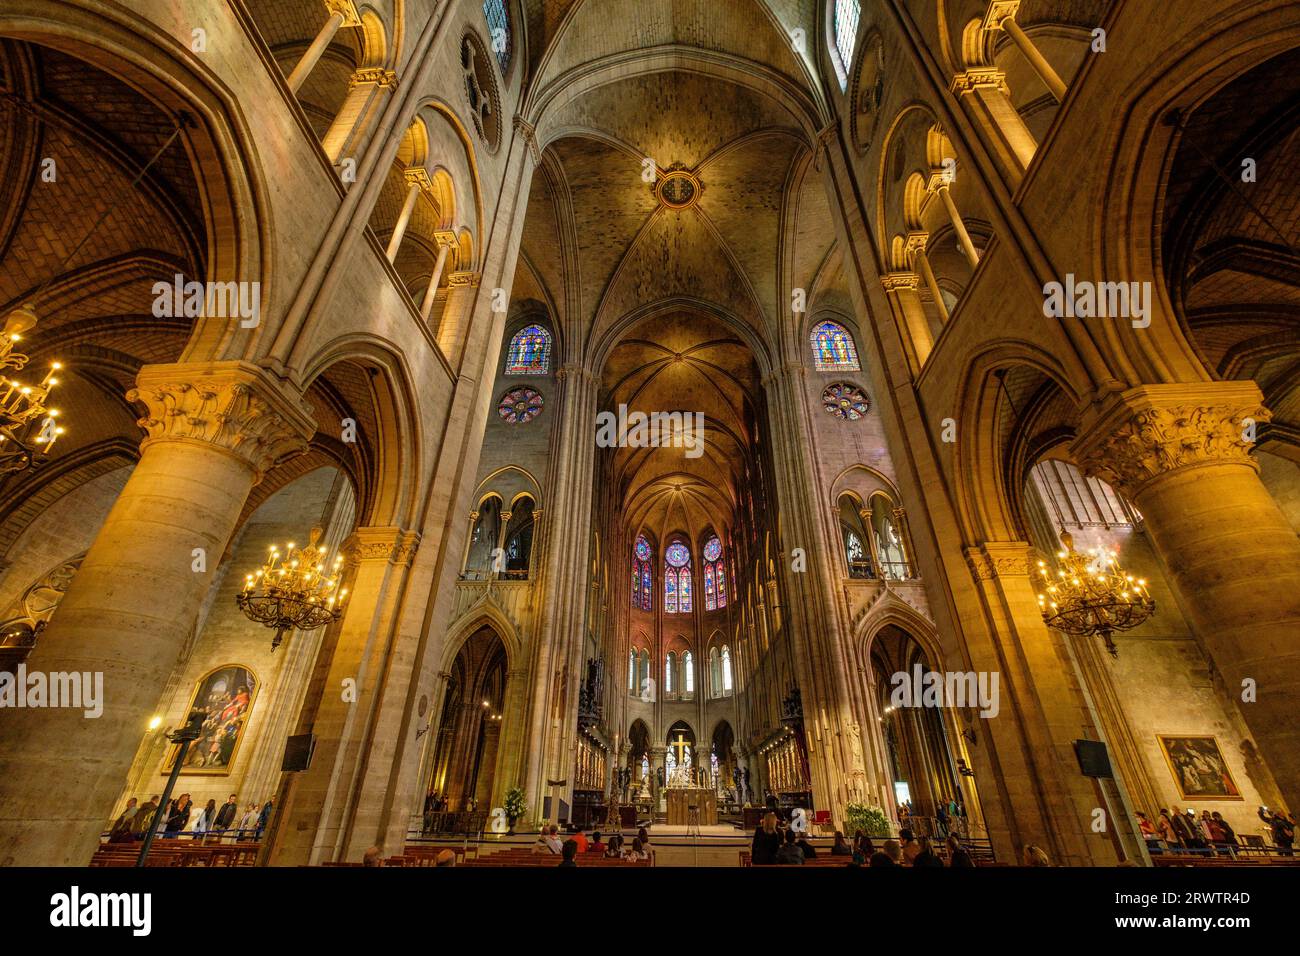 Cathédrale Notre Dame, sede de la archidiócesis de París, Paris, France,Western Europe Stock Photo